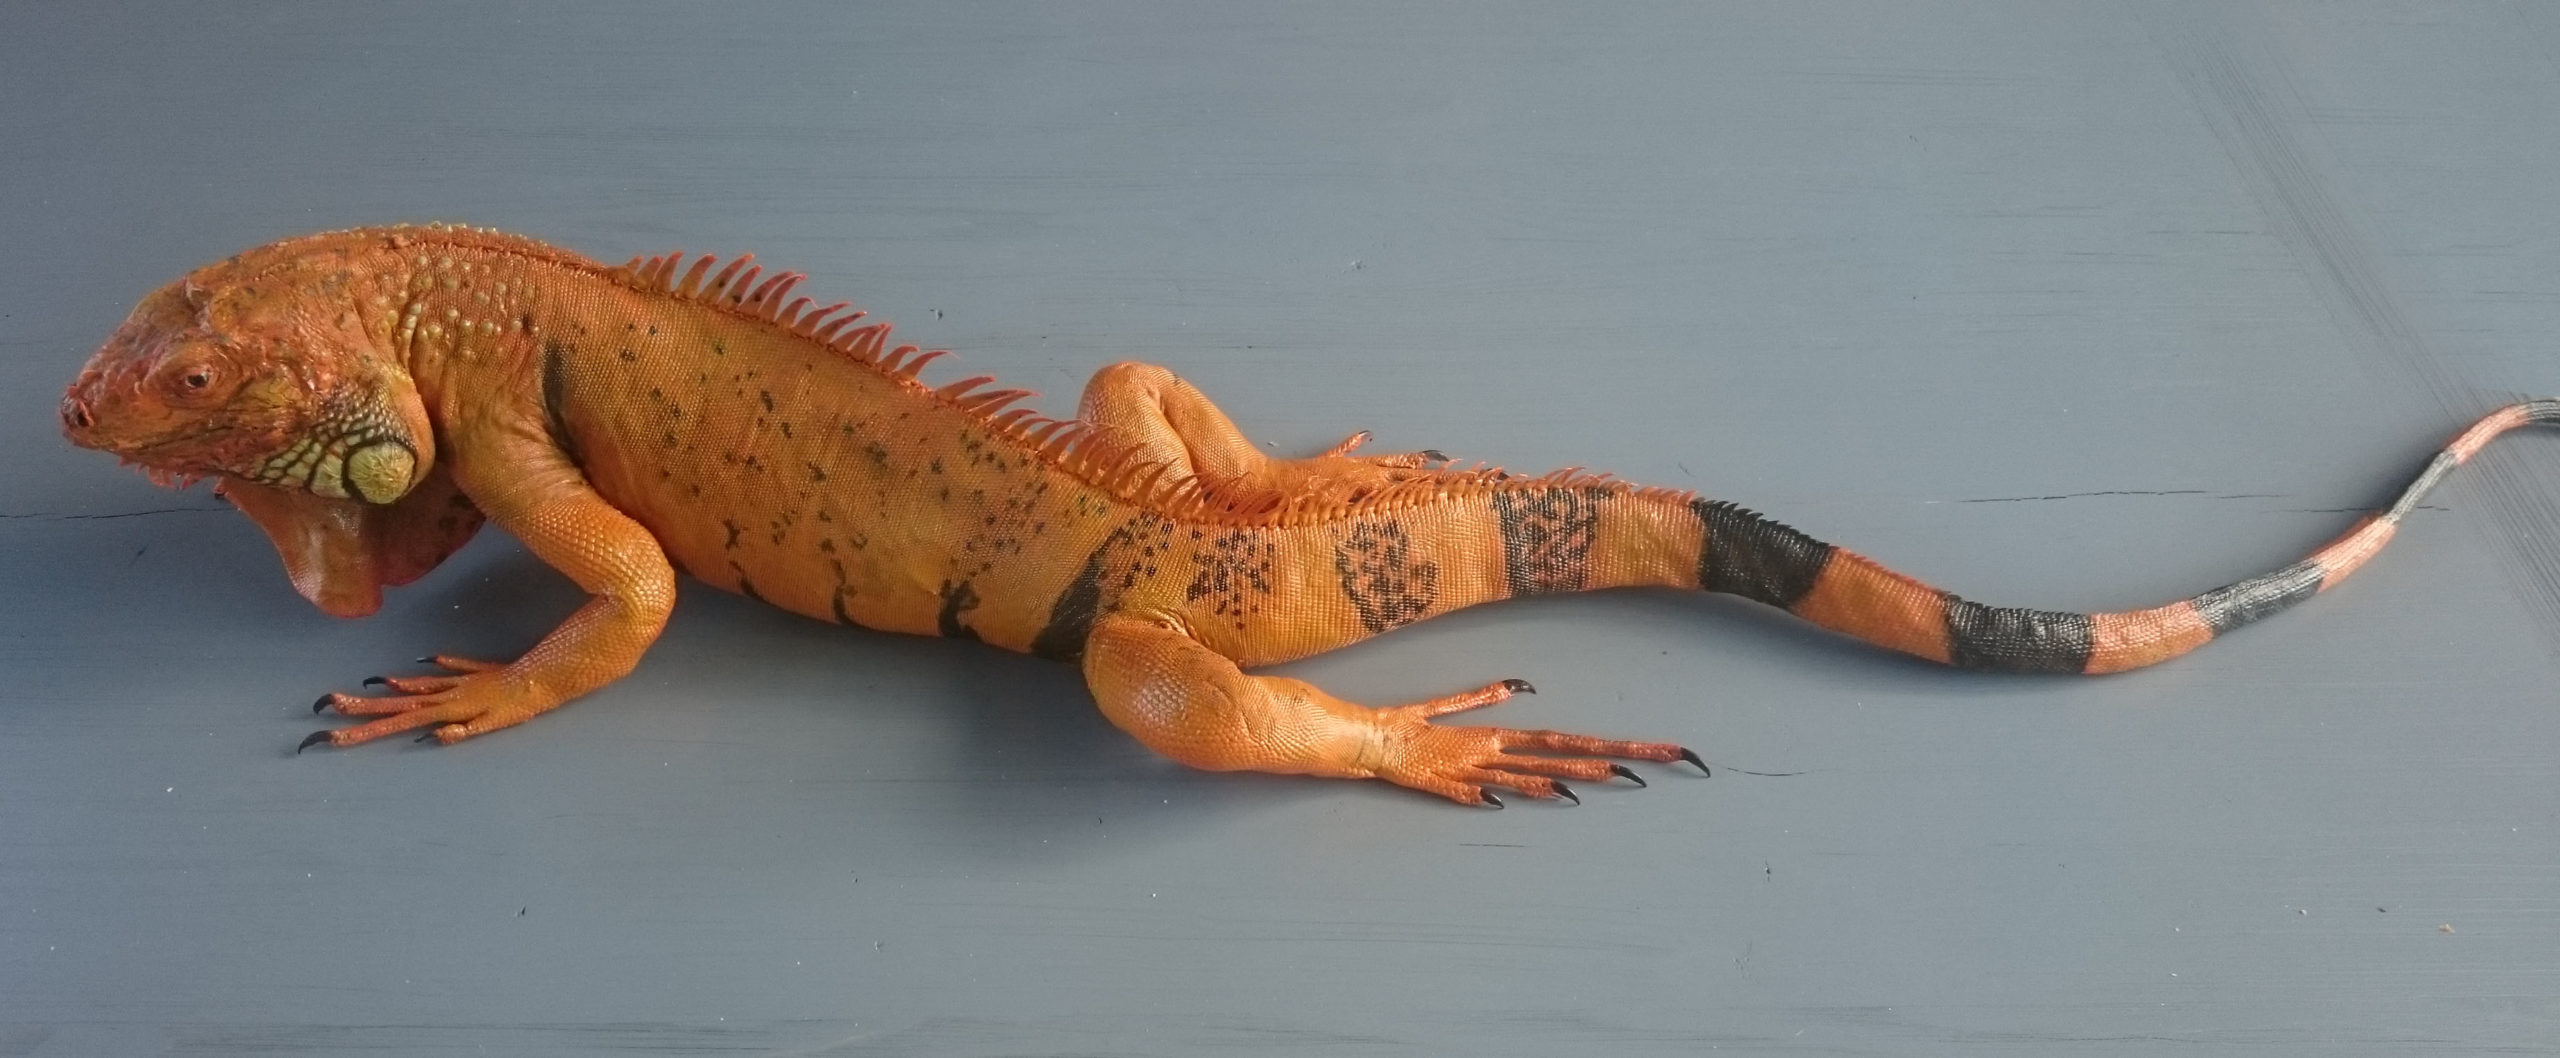 Iguane orange taxidermé